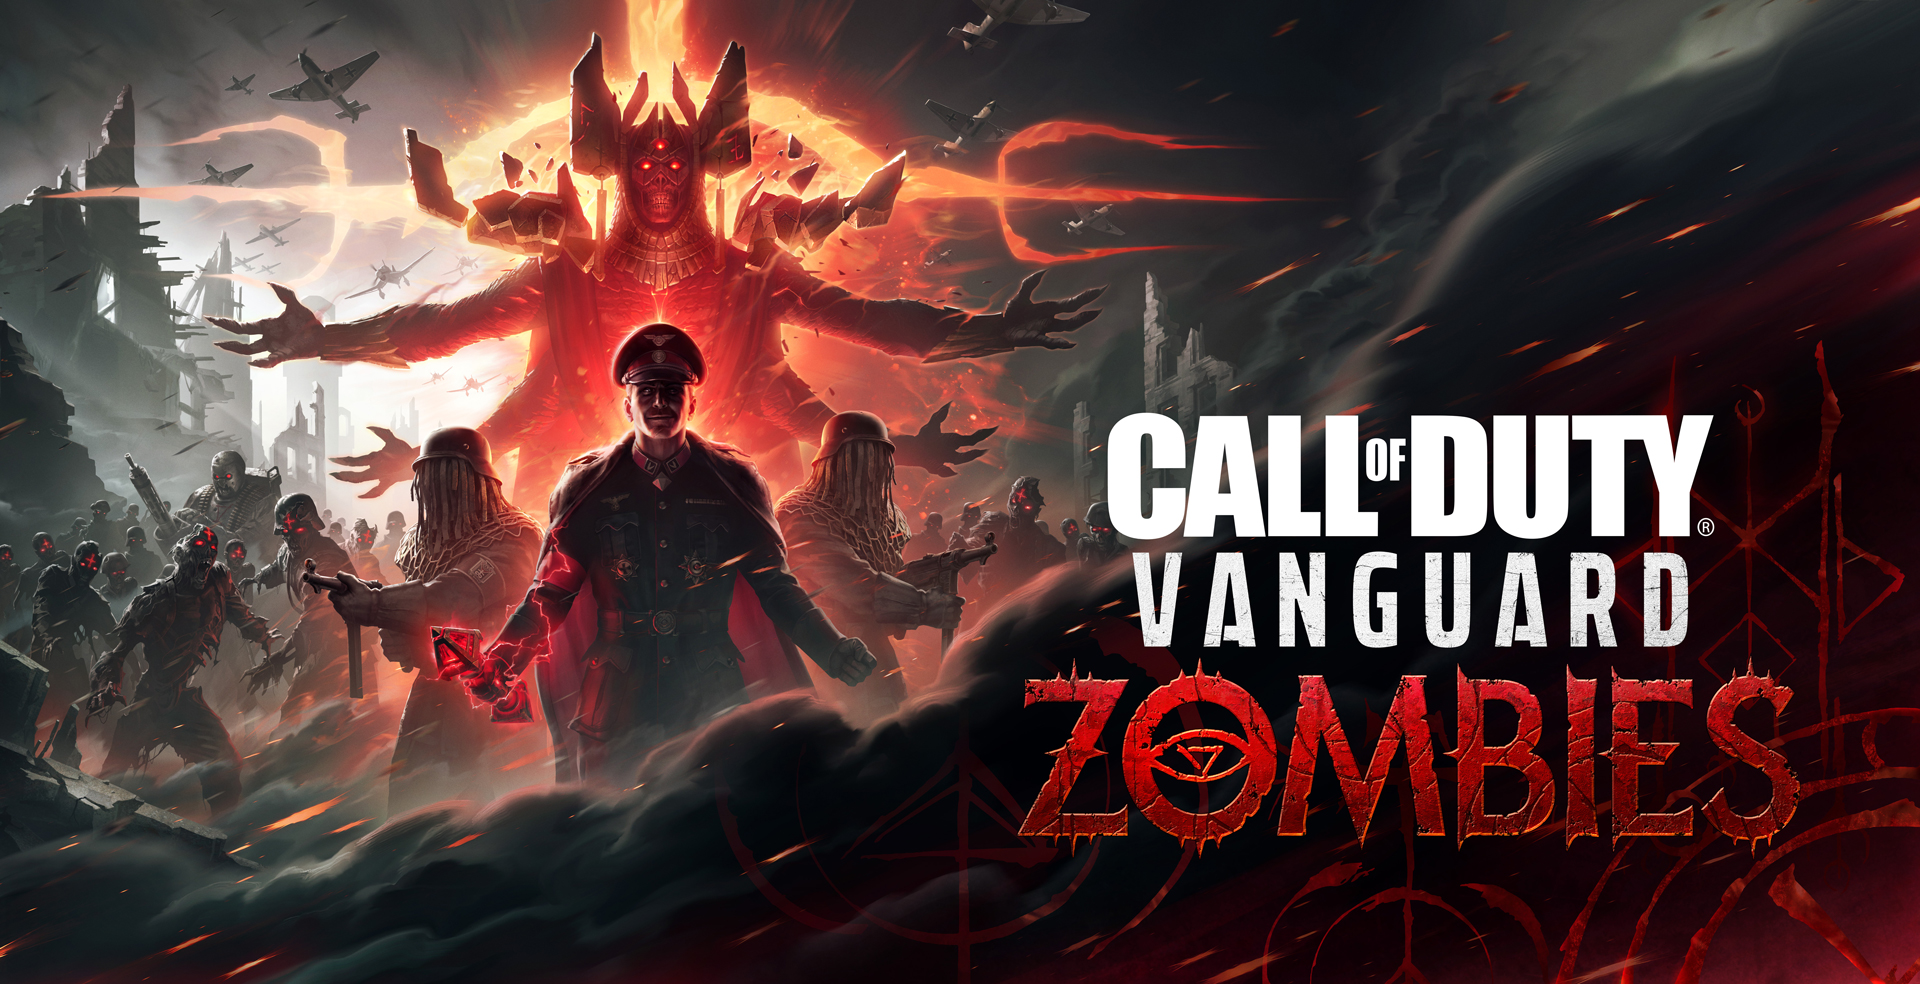 call of duty: vanguard zombies fragmanı bir sızıntının ardından ortaya çıktı.